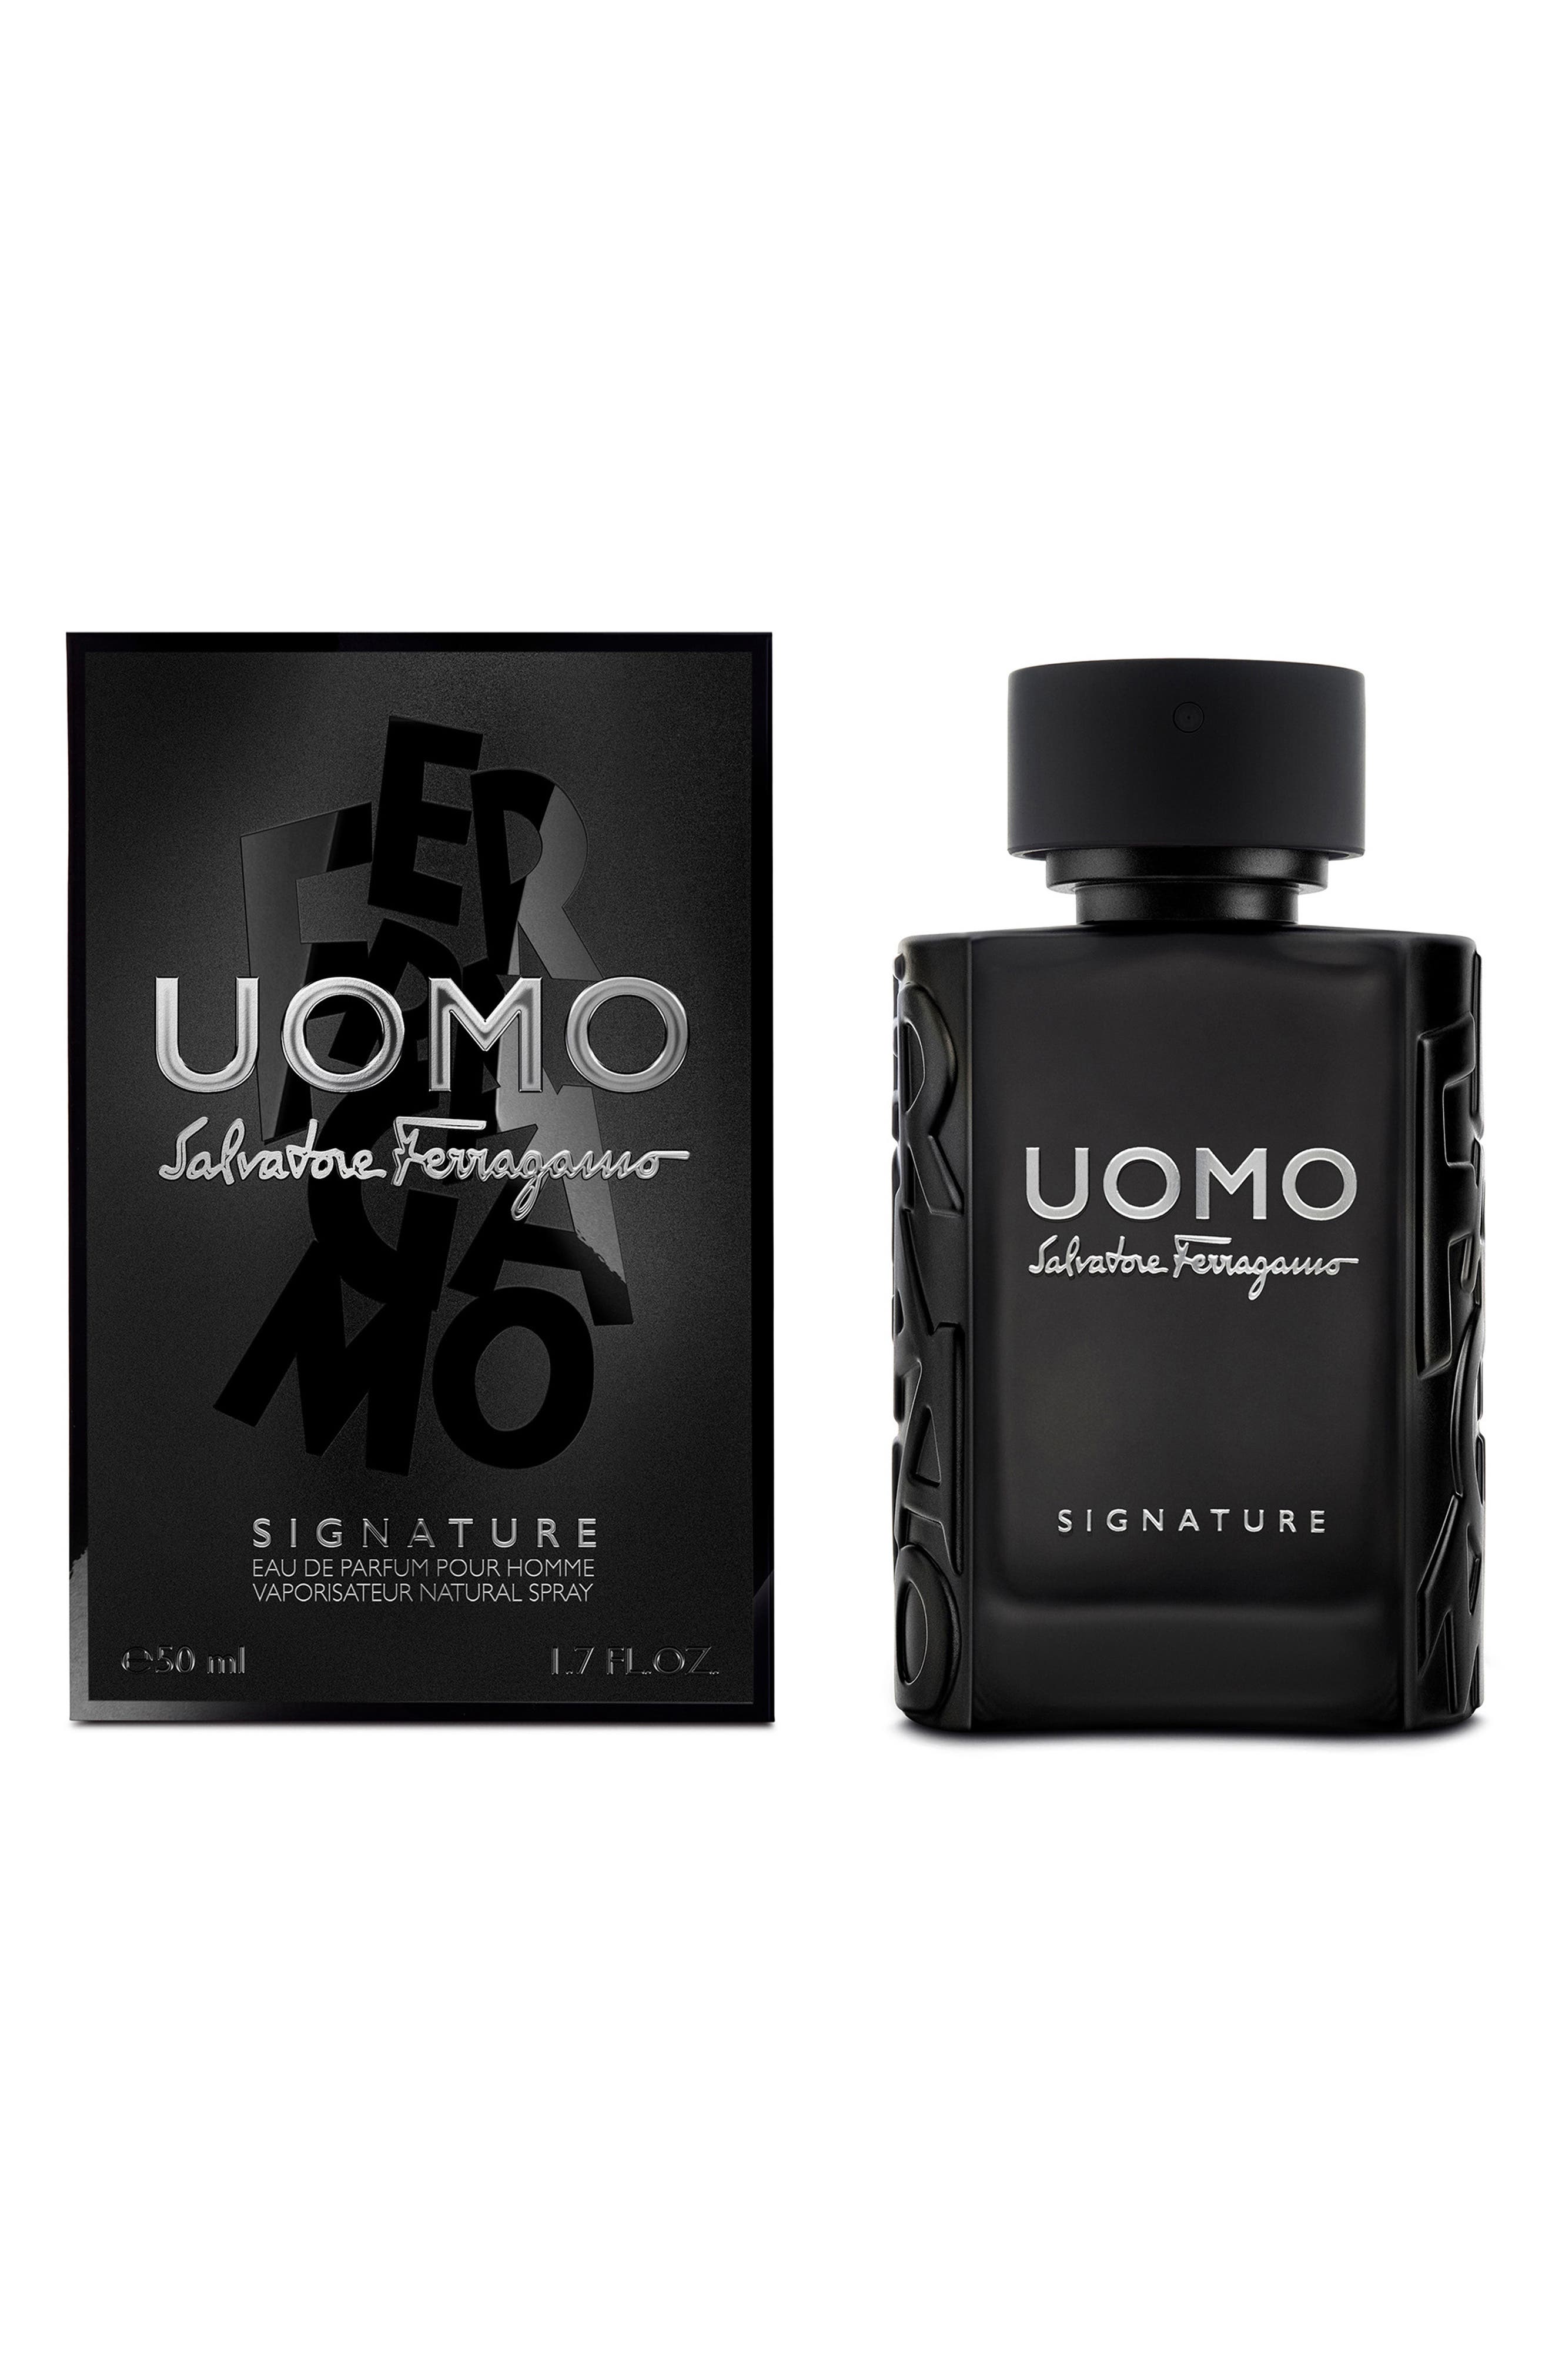 Salvatore Ferragamo Uomo Signature Eau de Parfum Pour Homme at Nordstrom, Size 3.4 Oz